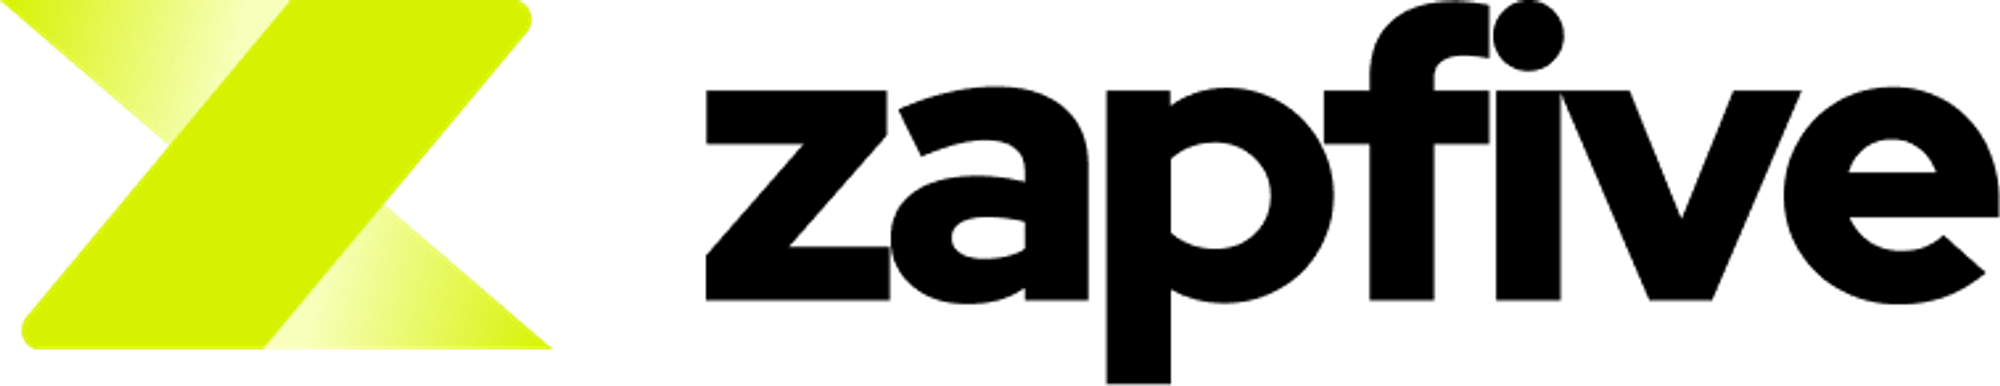 Modern logo design for zapfive.com